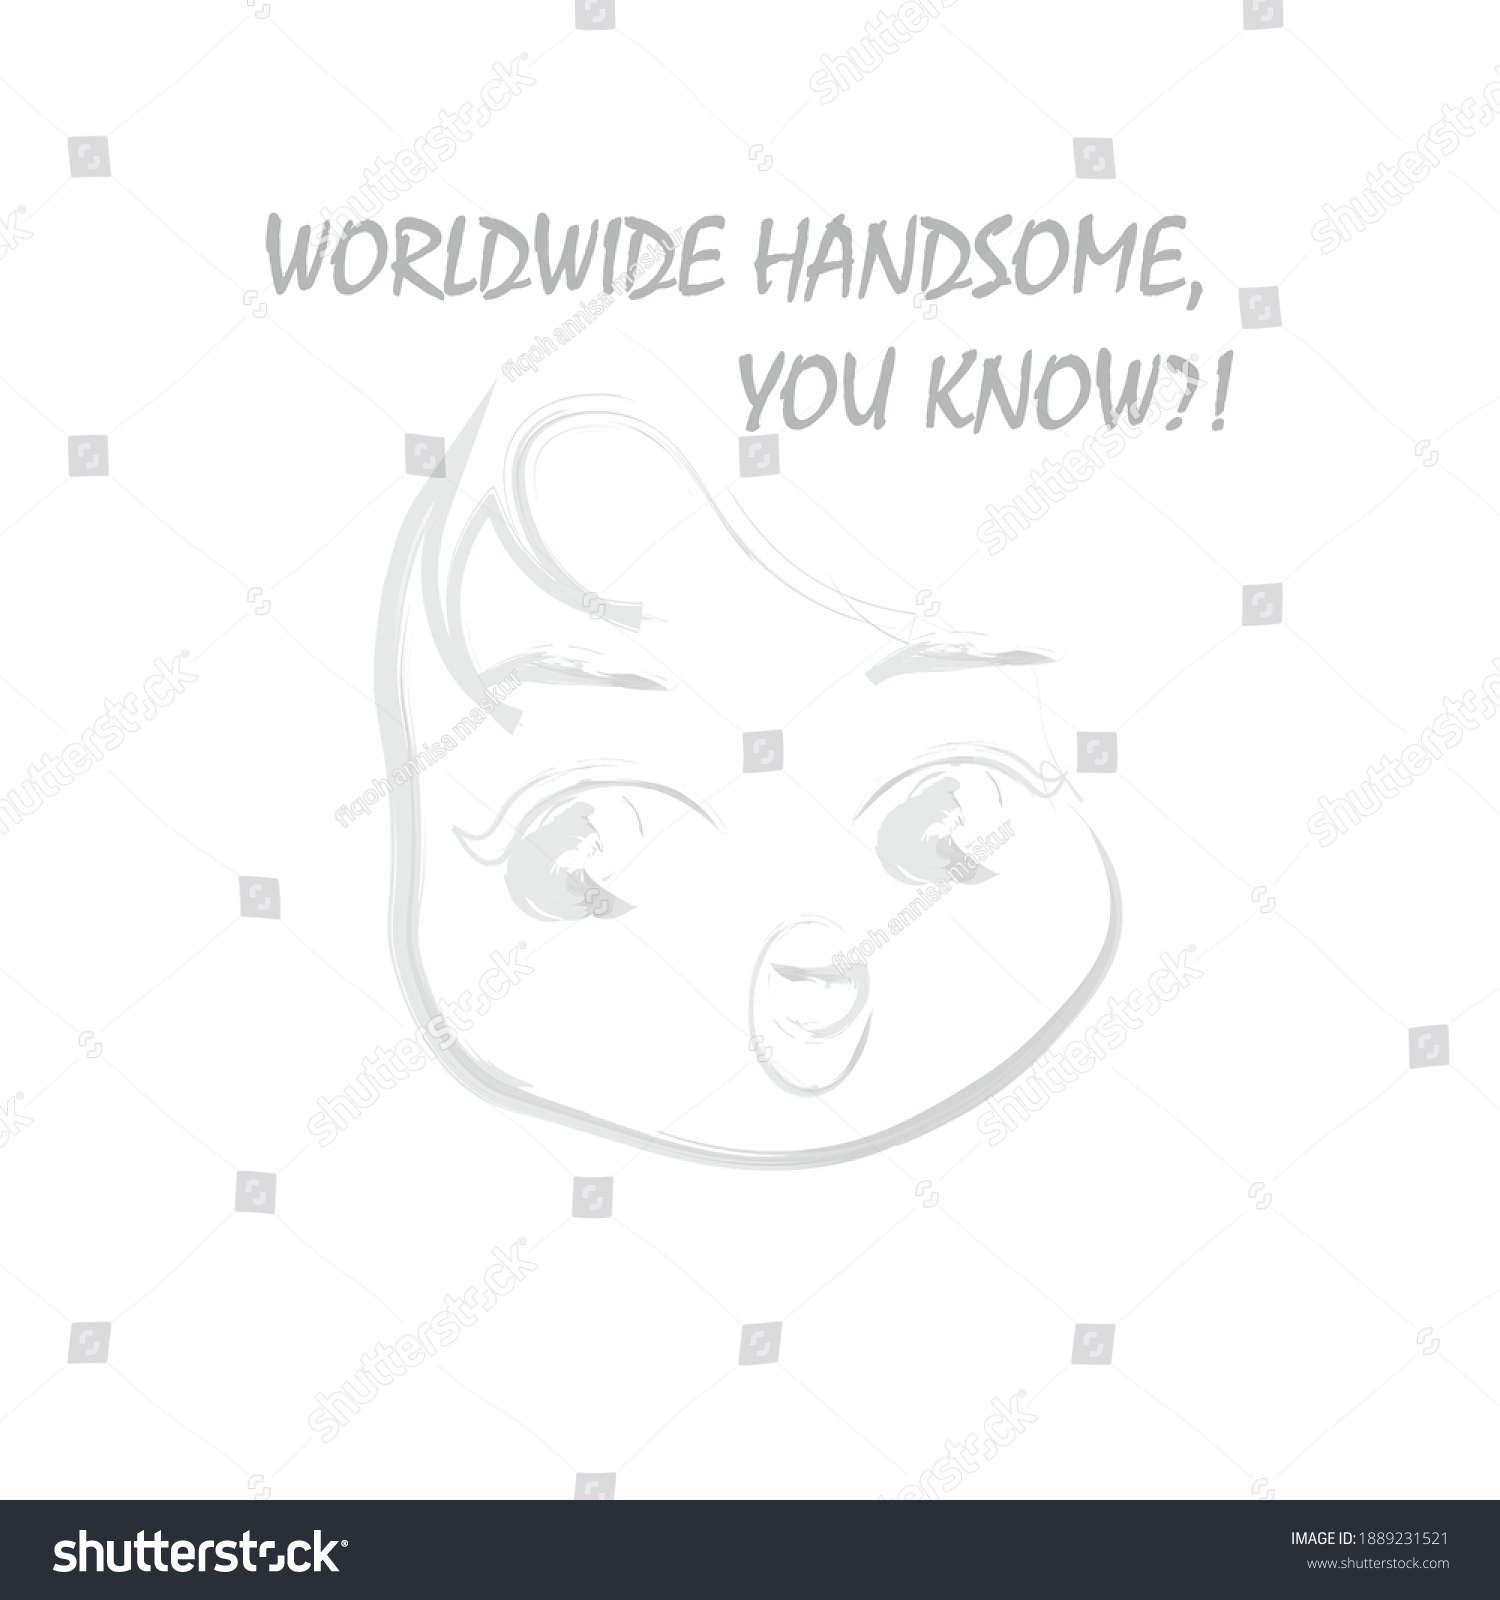 SVG of worldwide handsome cute boy sketch svg